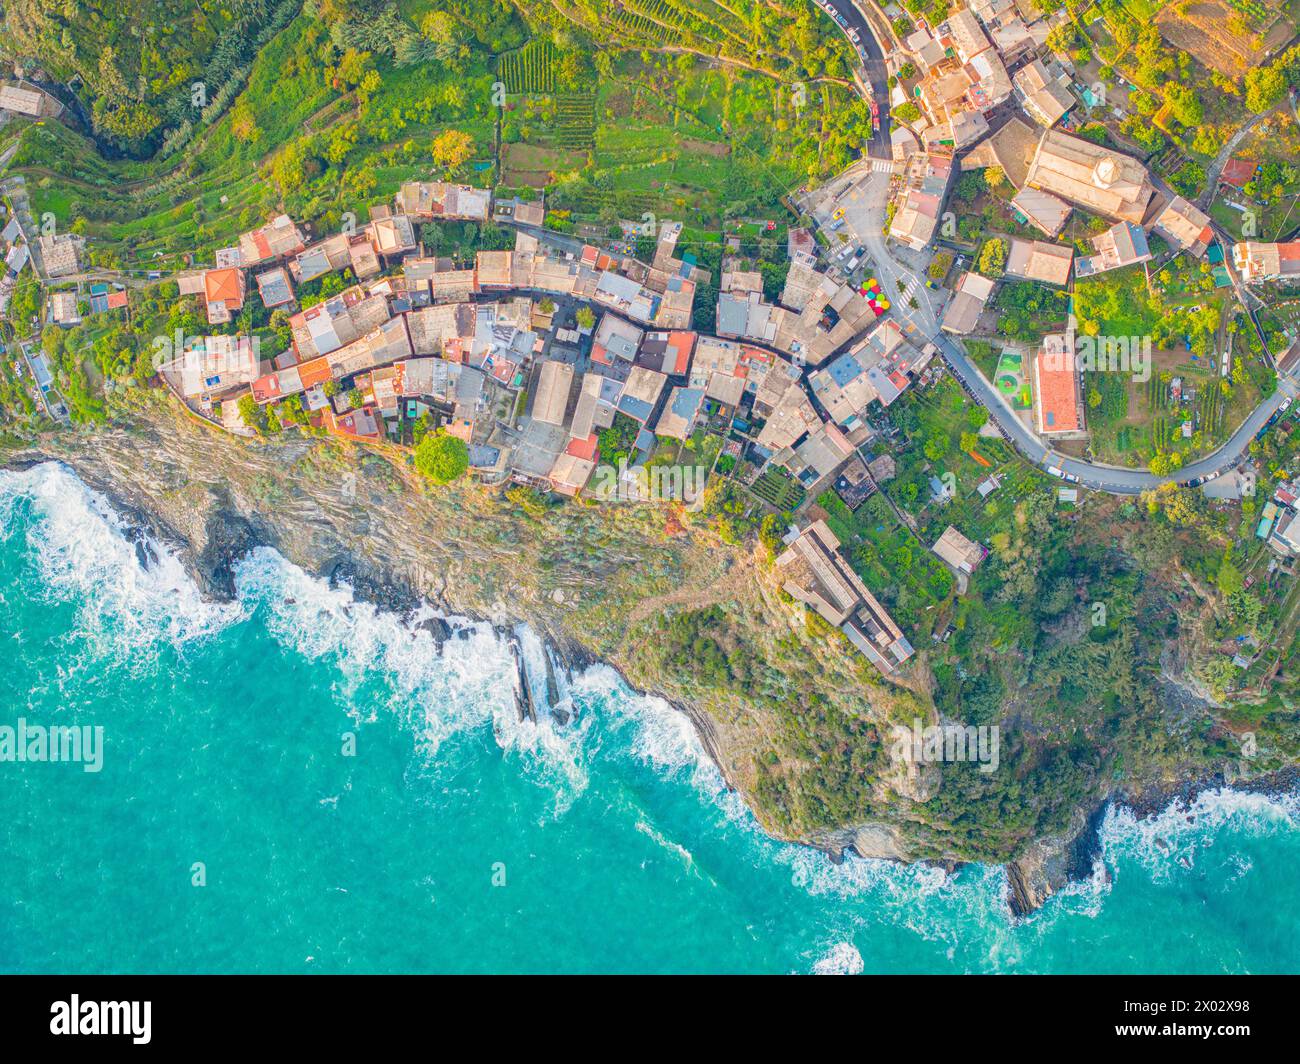 Vista aerea con drone del famoso villaggio di Corniglia, del Parco Nazionale delle cinque Terre, sito Patrimonio dell'Umanità dell'UNESCO, la Spezia, Liguria, Italia Foto Stock